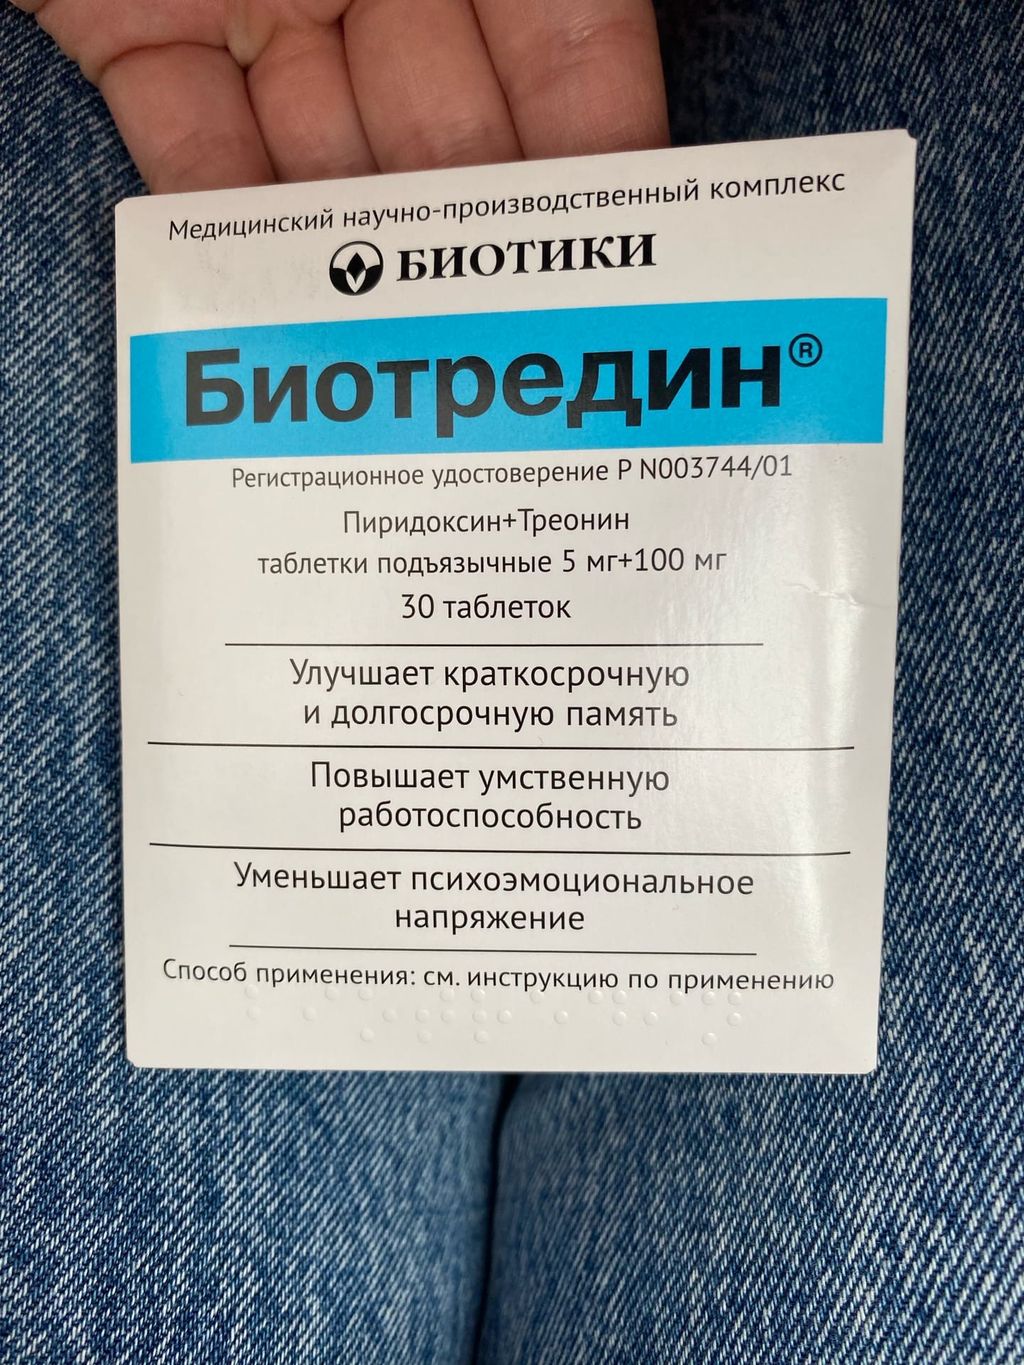 Биотредин  в Крыму, цены в аптеках, формы выпуска биотредин .